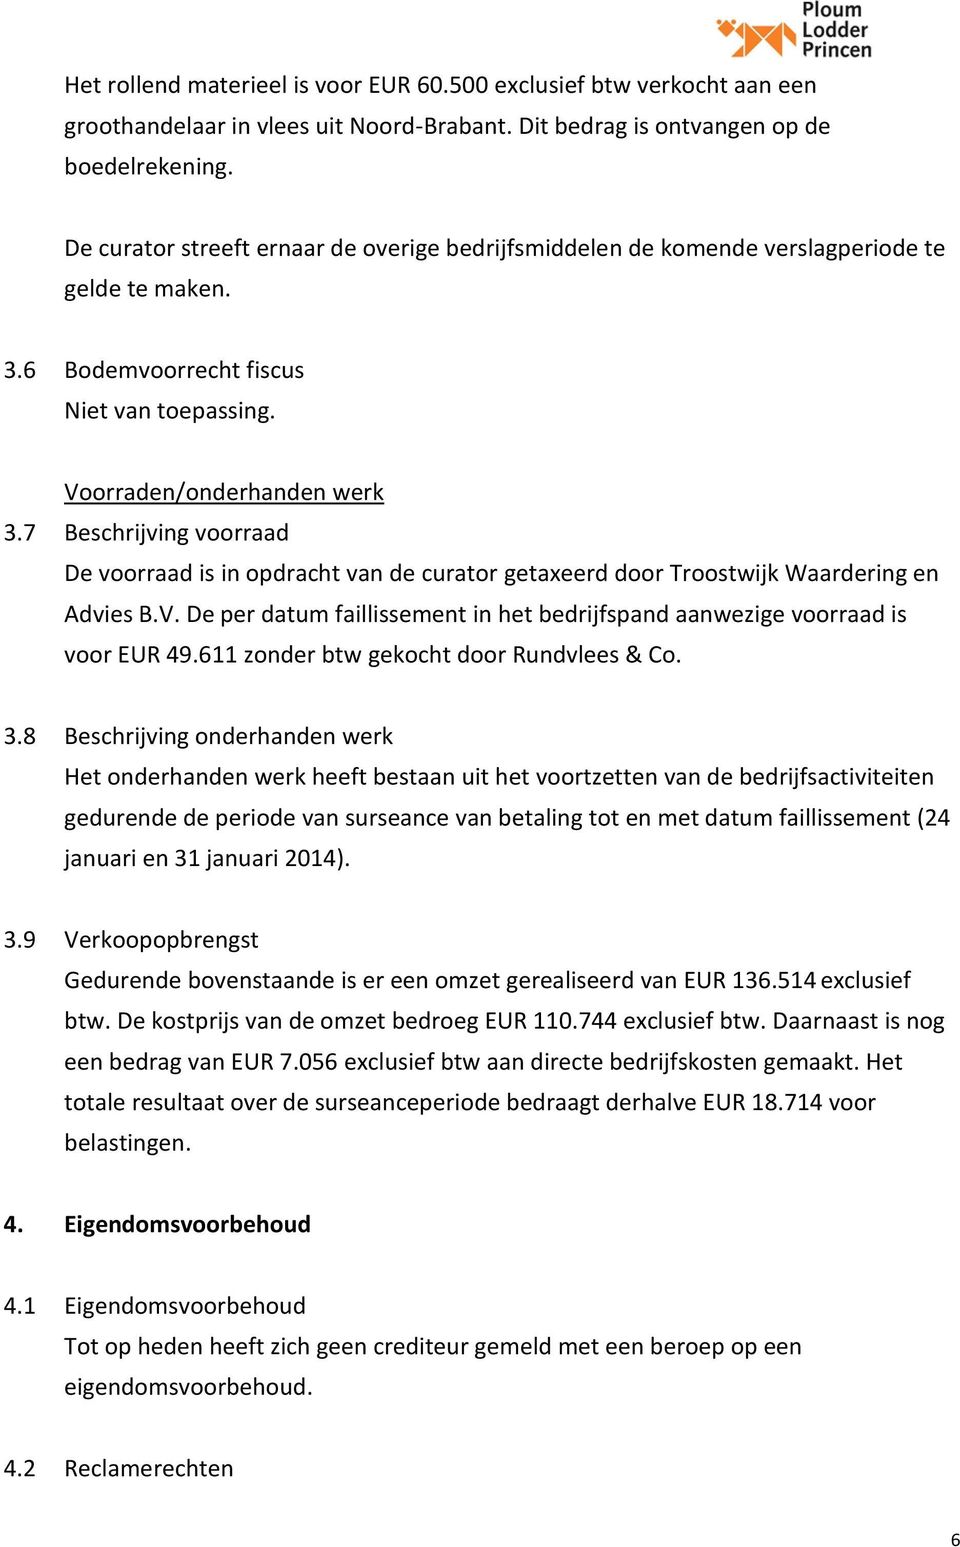 7 Beschrijving voorraad De voorraad is in opdracht van de curator getaxeerd door Troostwijk Waardering en Advies B.V. De per datum faillissement in het bedrijfspand aanwezige voorraad is voor EUR 49.